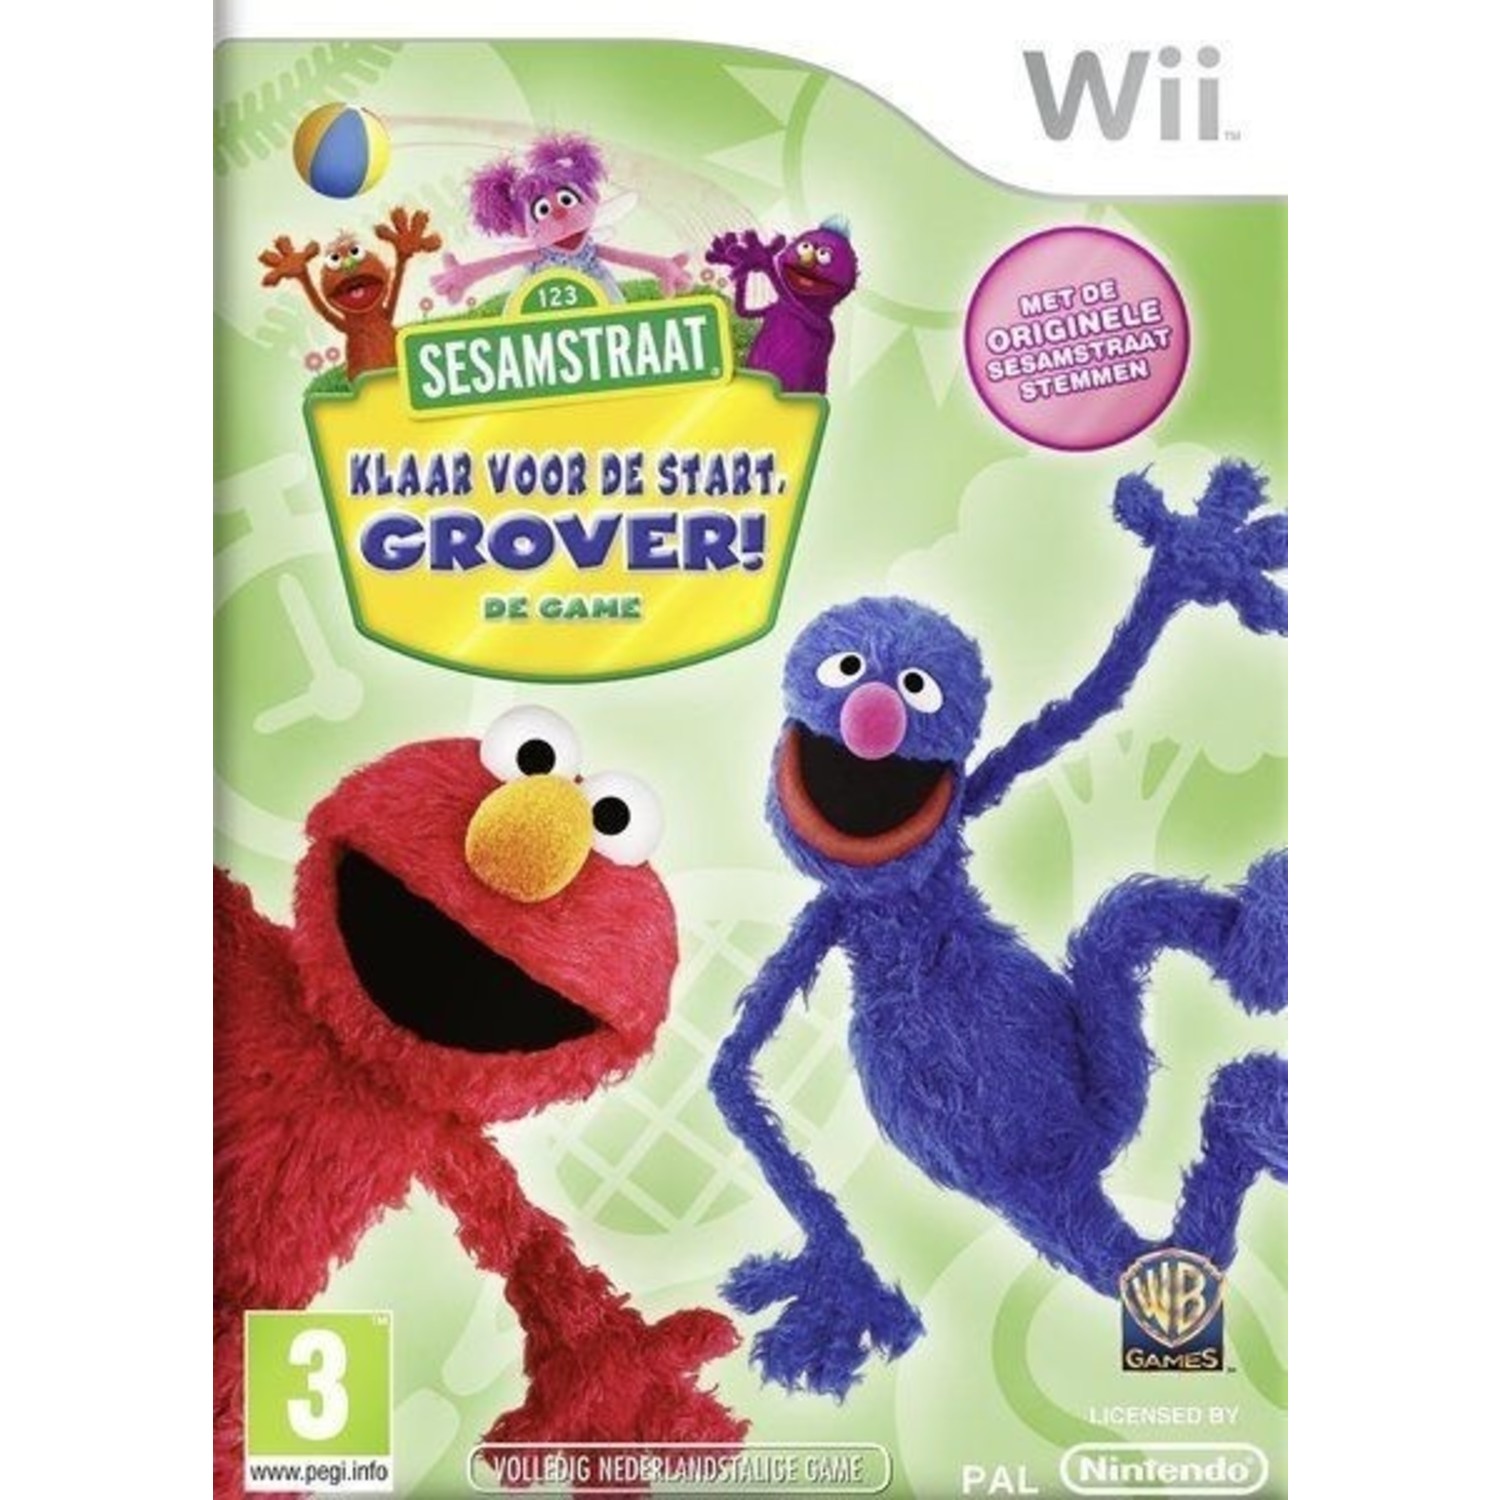 Noodlottig Verder Begraafplaats Sesamstraat Klaar Voor de Start Grover voor de Nintendo Wii kopen bij Reway  met garantie - Reway.nl